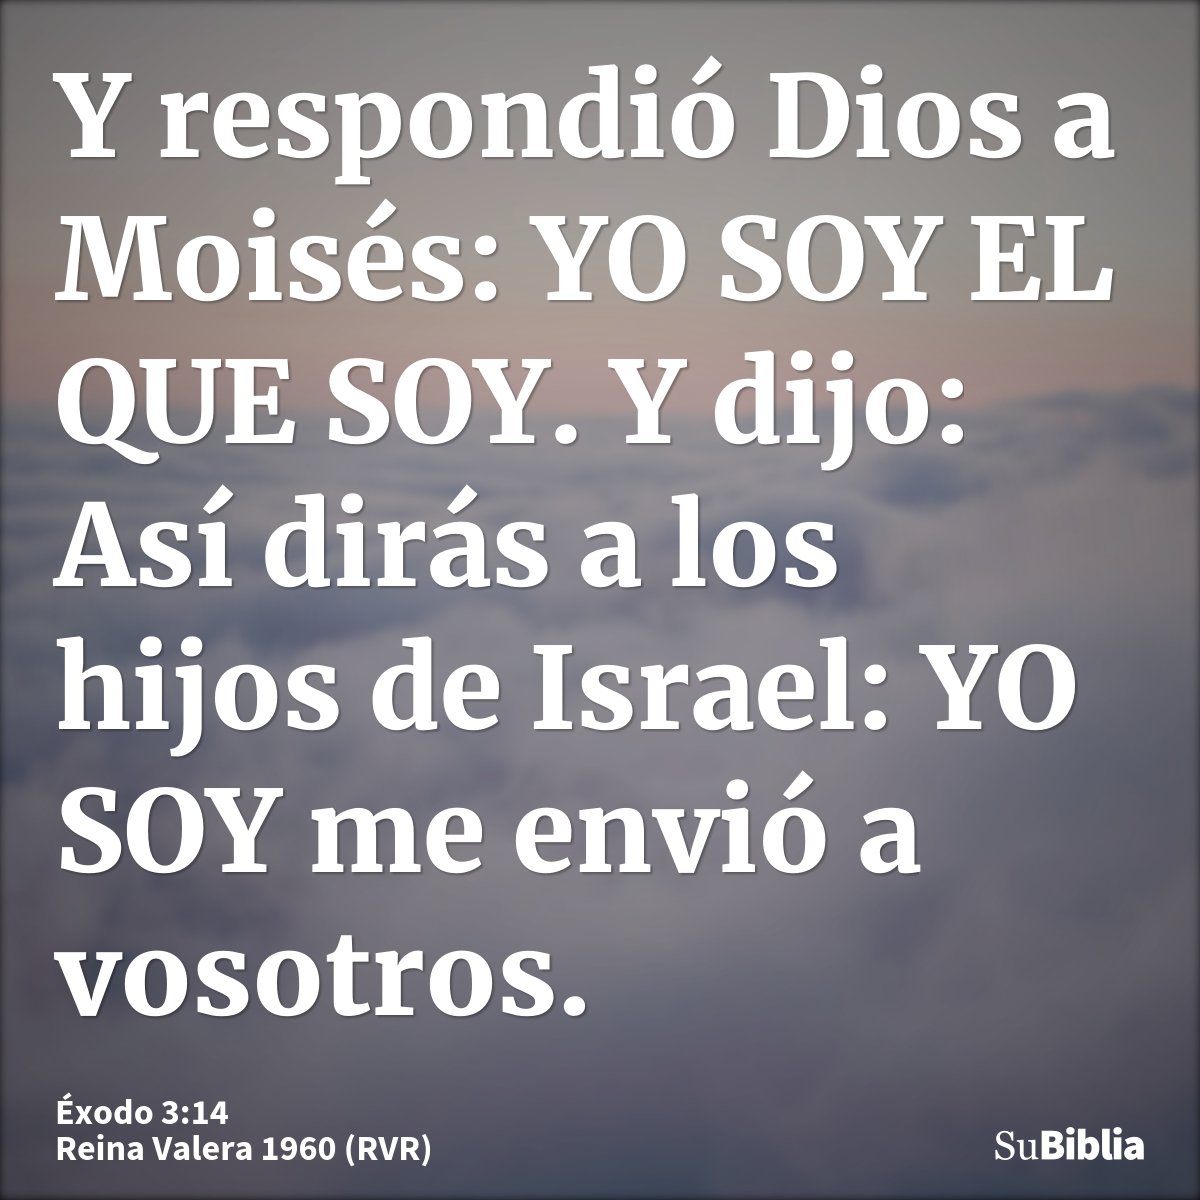 Y respondió Dios a Moisés: YO SOY EL QUE SOY. Y dijo: Así dirás a los hijos de Israel: YO SOY me envió a vosotros.